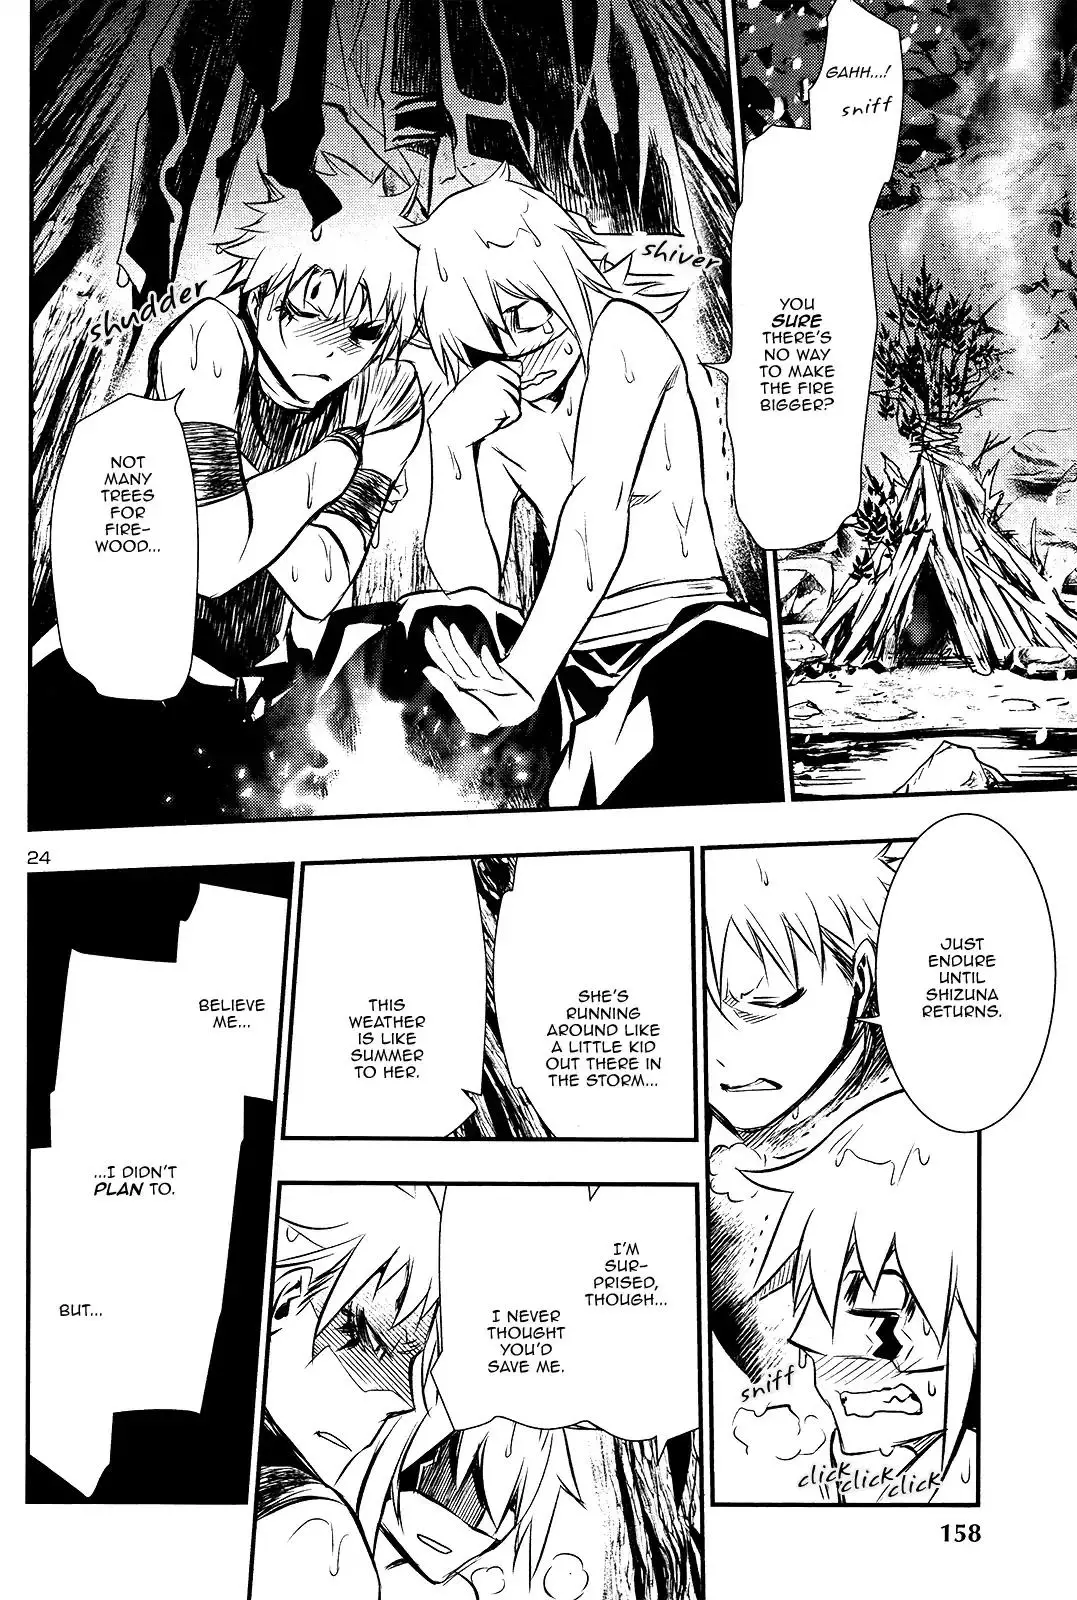 Shinju no Nectar - 24 page 23